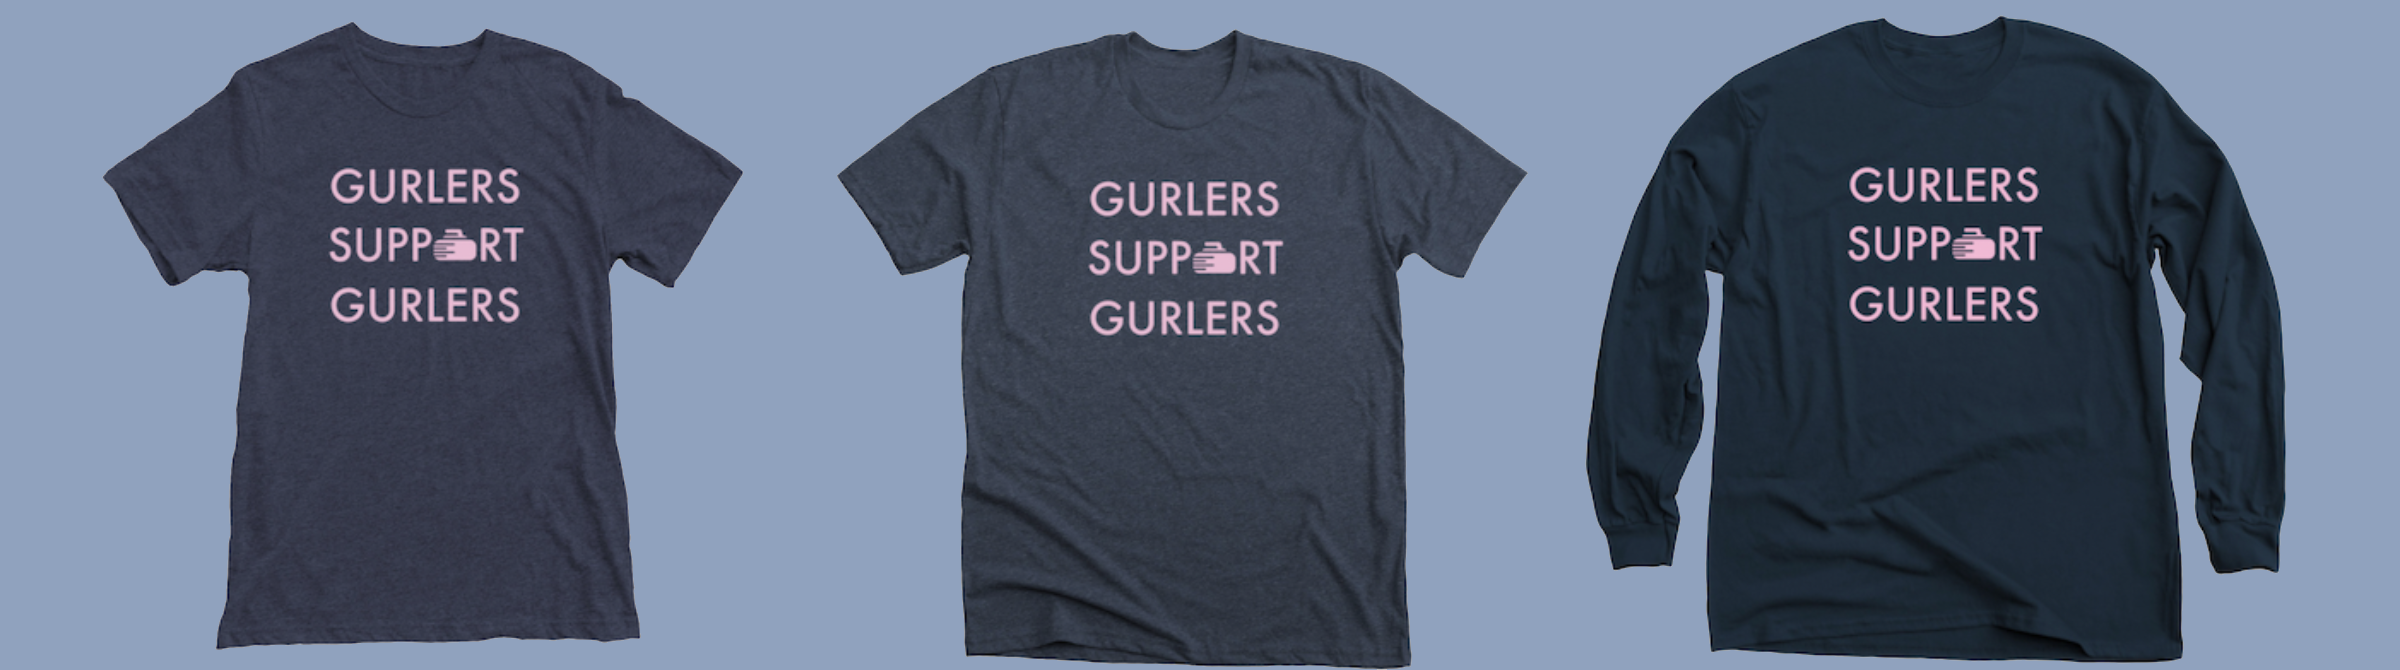 gurlers-support-gurlers-slider-blue